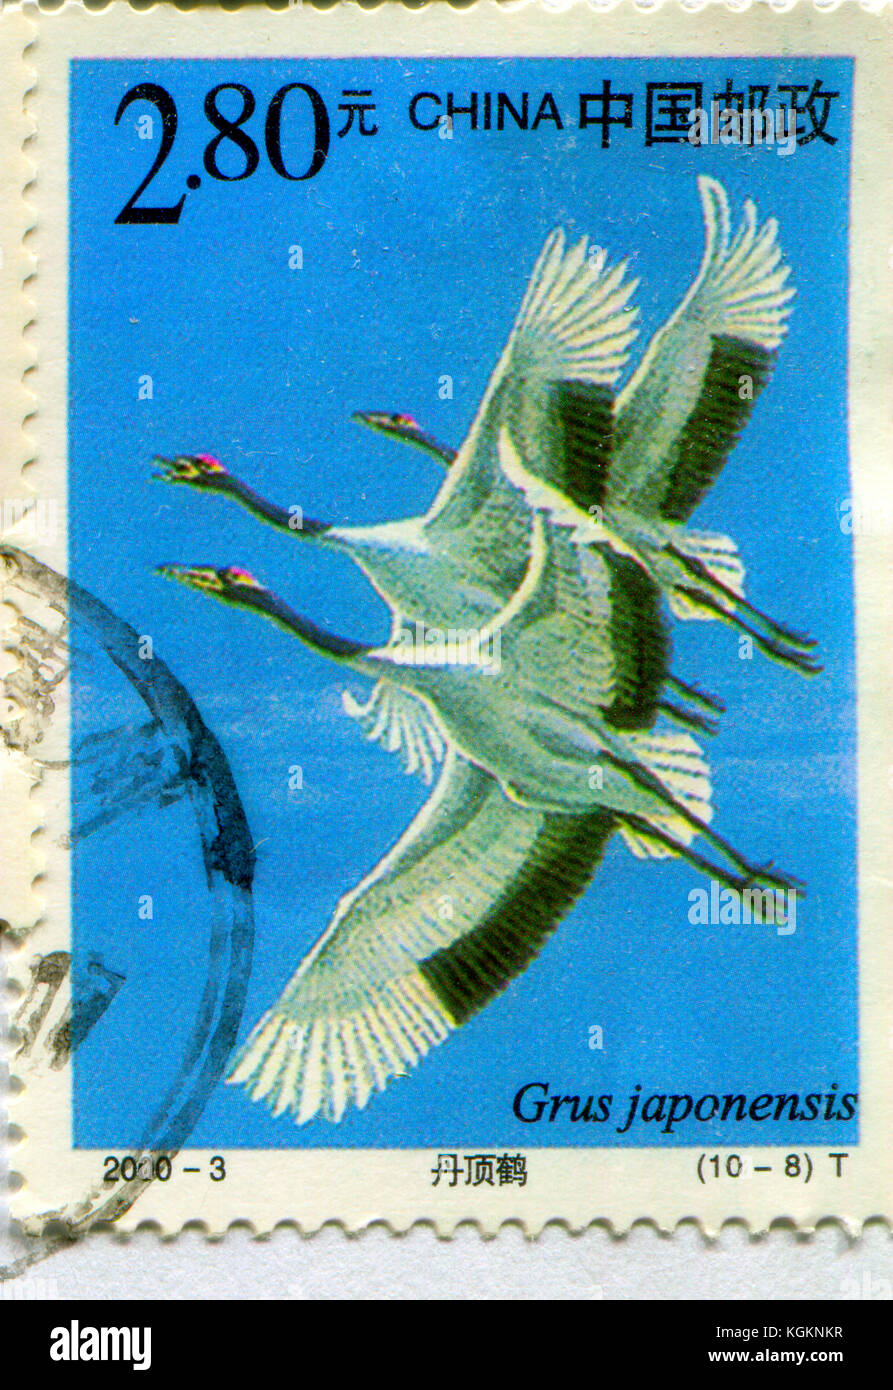 GOMEL, WEISSRUSSLAND, 27. OKTOBER 2017, Briefmarke gedruckt in China zeigt Bild des Grus japonensis, um 2000. Stockfoto